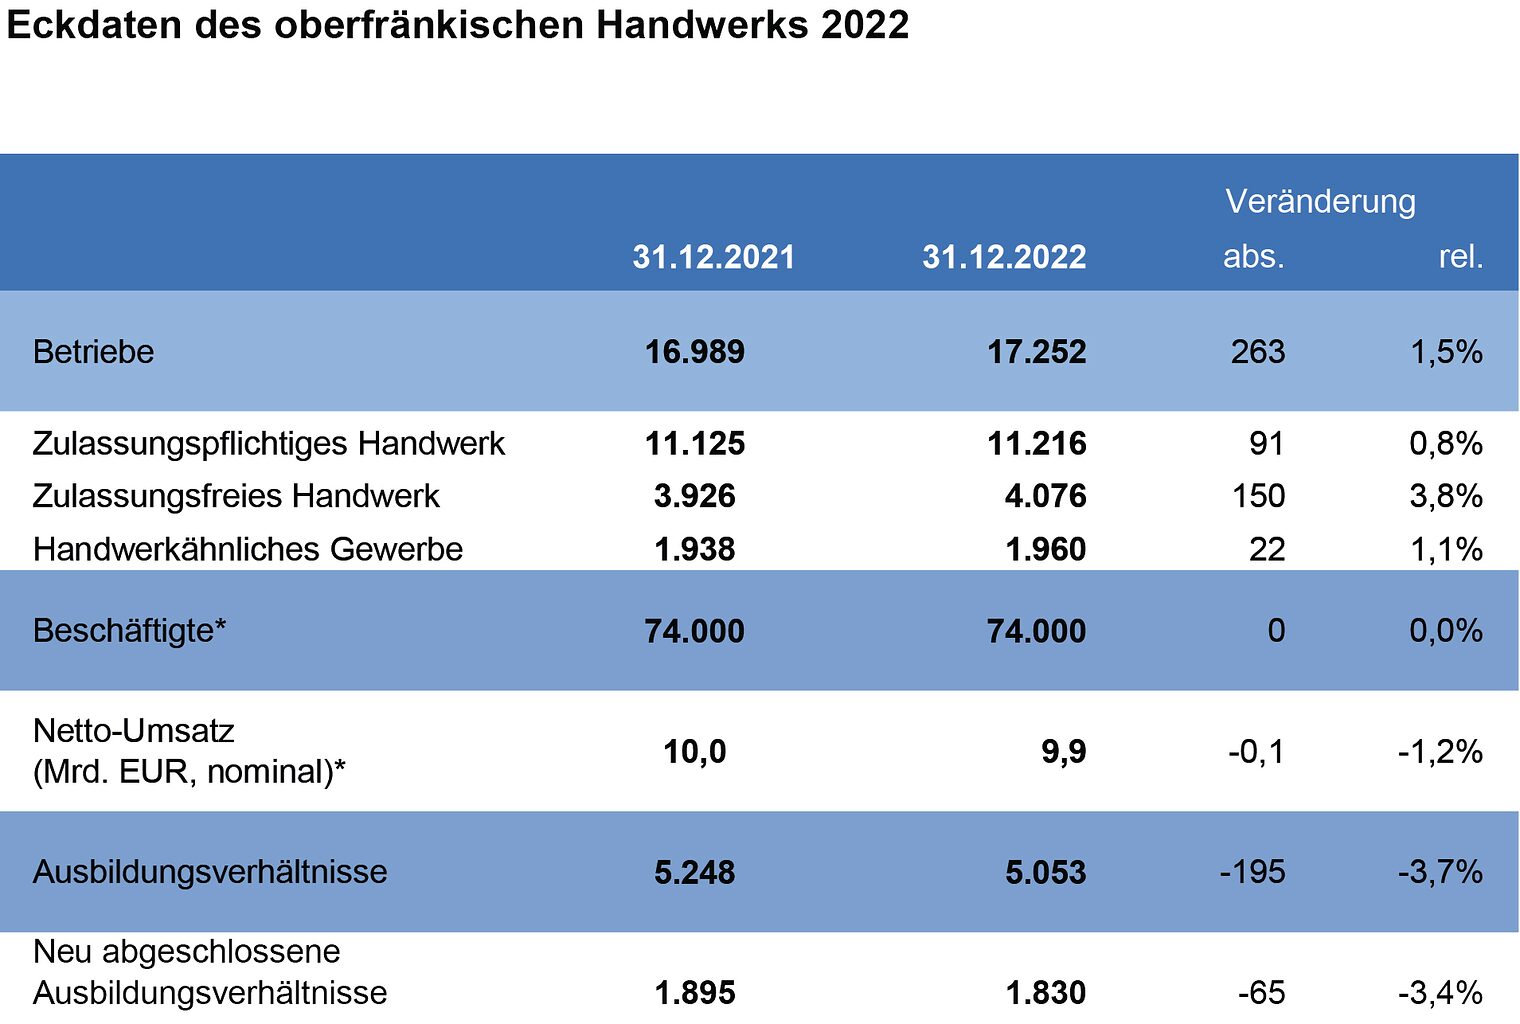 Eckdaten_2022_oberfränkisches Handwerk